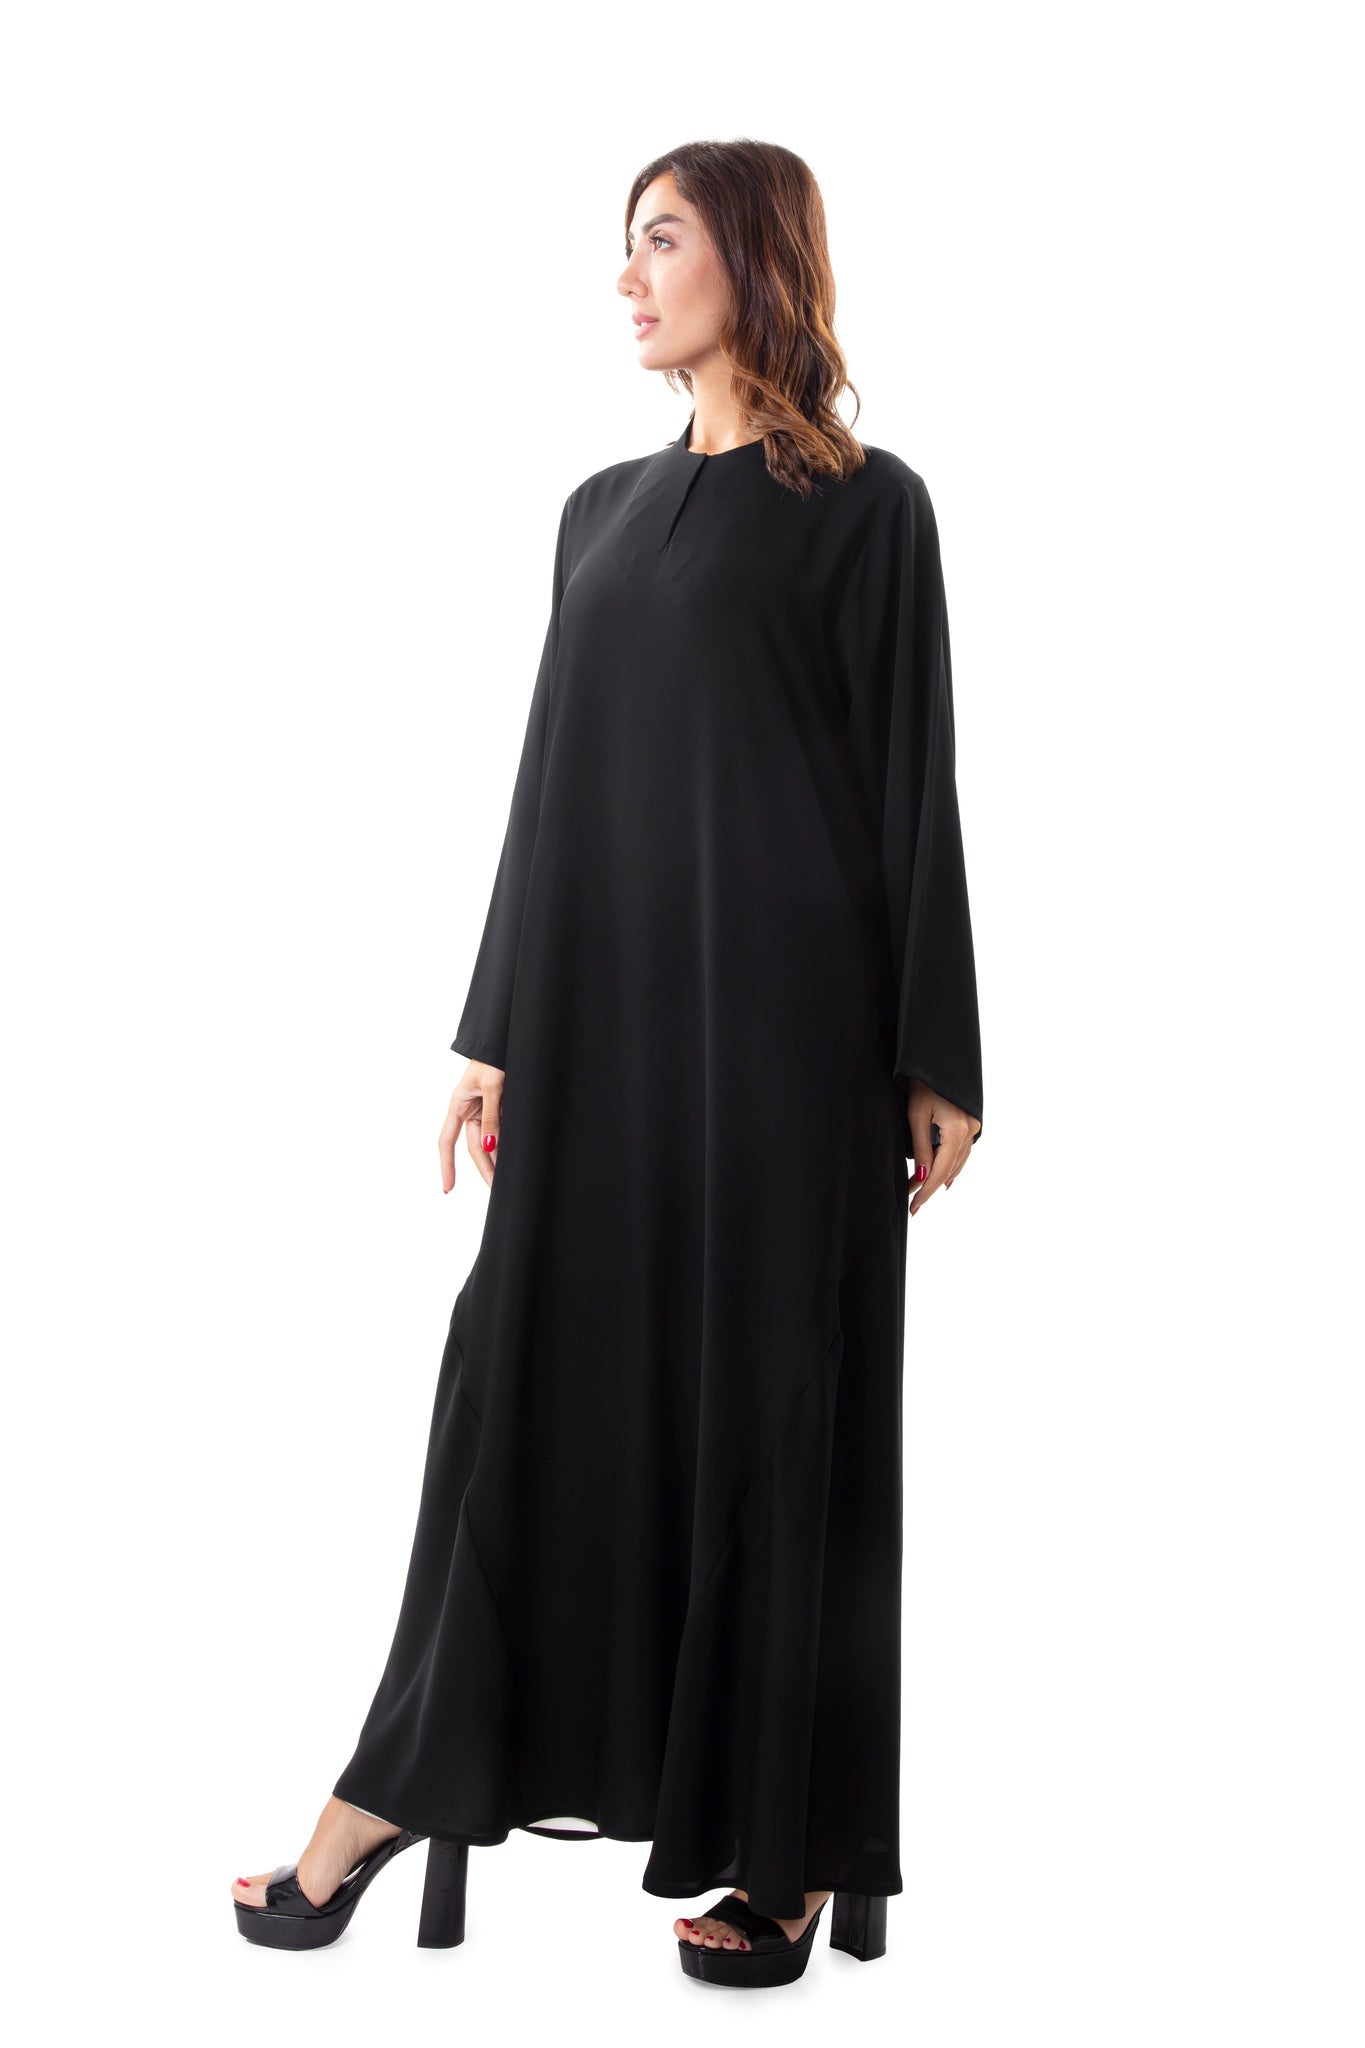 Stylish Abayas for Women in UAE | Buy Luxury Abayas Online Hanayen